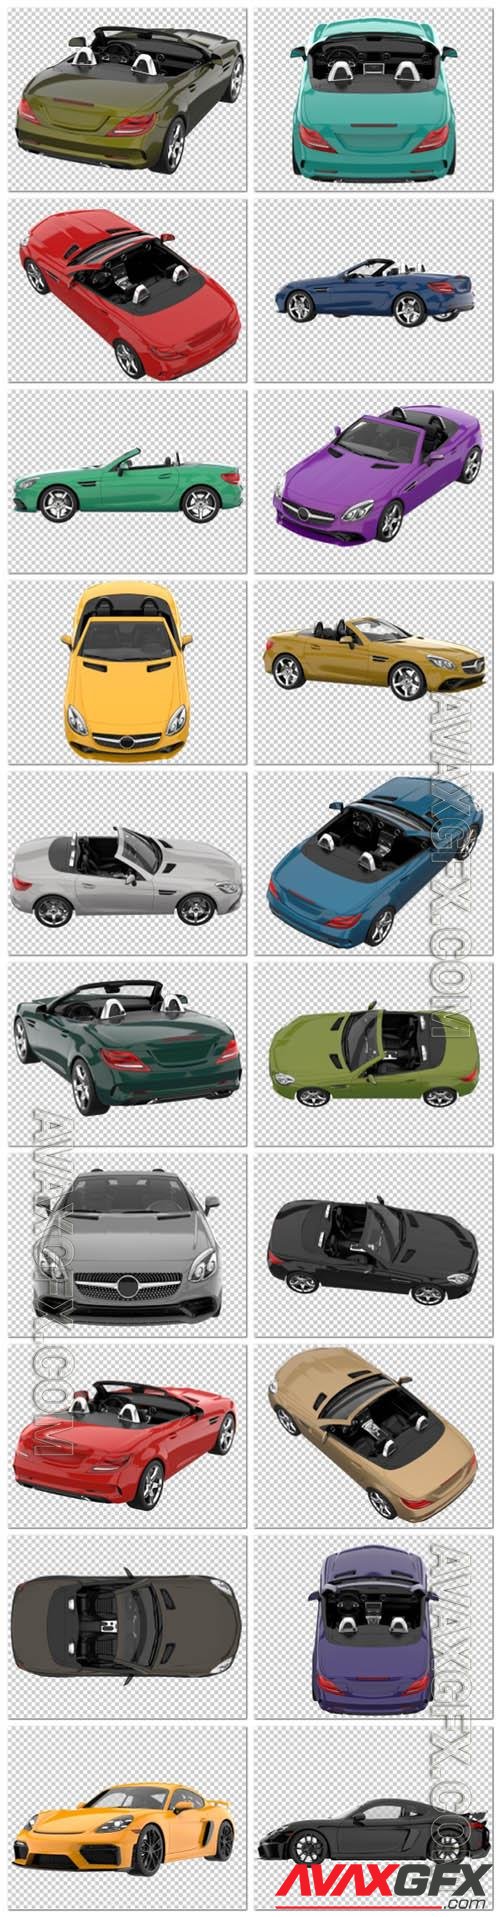 20 Sport car on transparent background, 3d rendering - illustration in psd vol 3